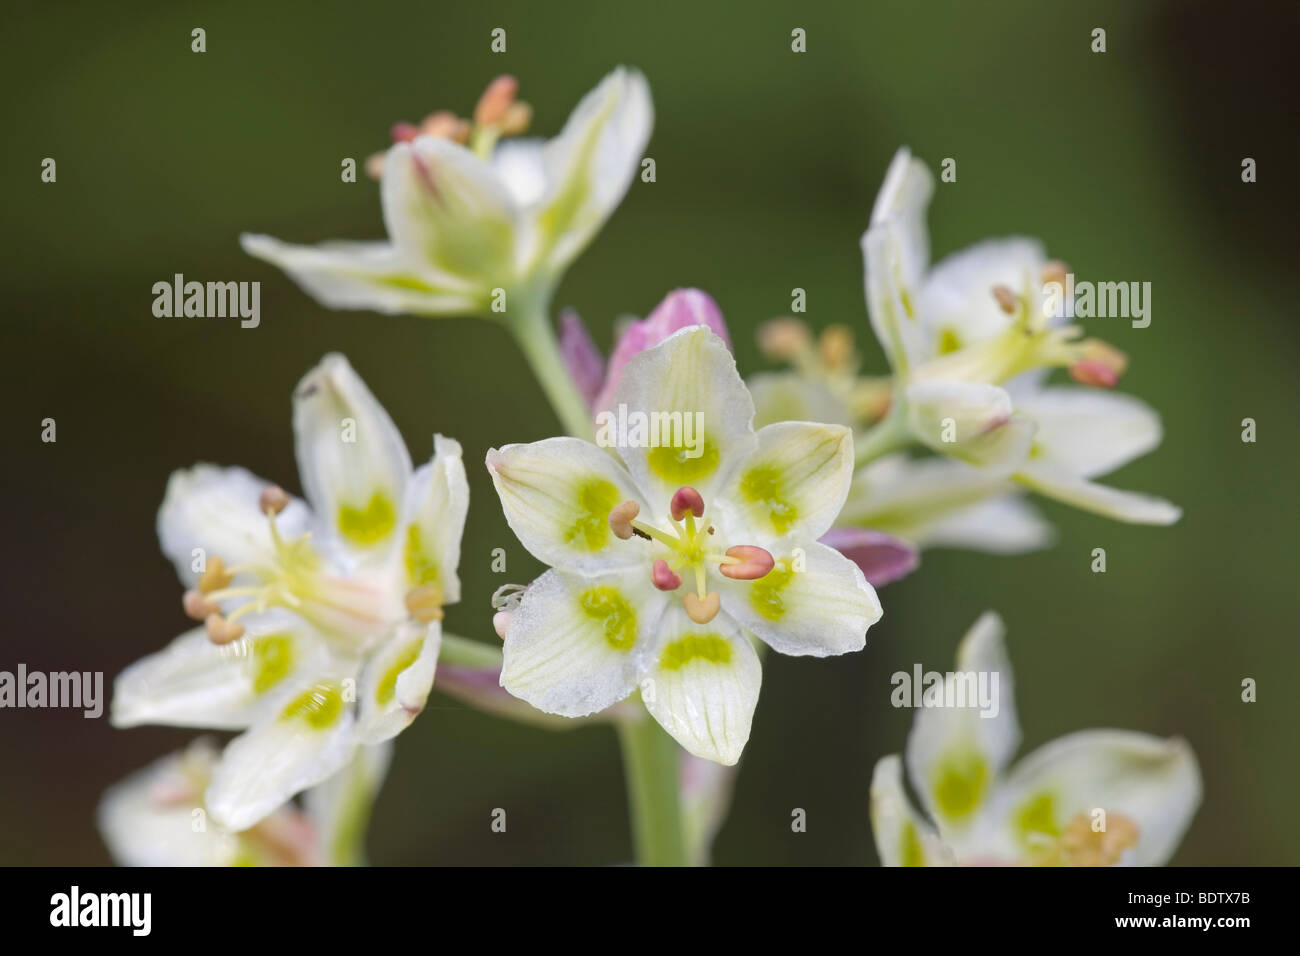 Zierliche Jochlilie - (Jochblume) / Mountain Deathcamas - (Alkali Grass) / Zigadenus elegans Stock Photo